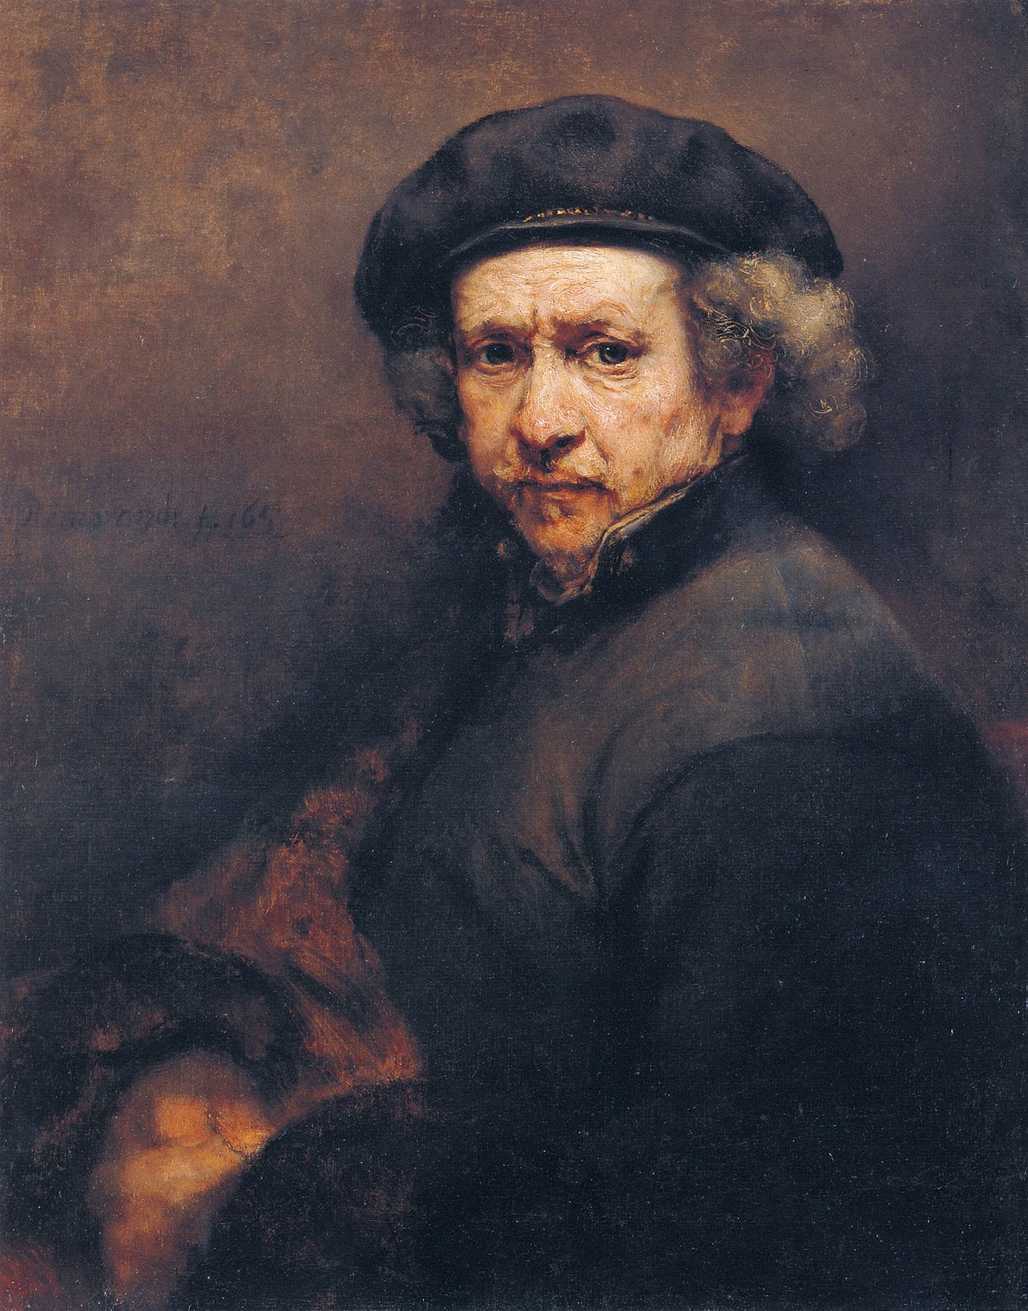 Rembrandt's Self-Portrait